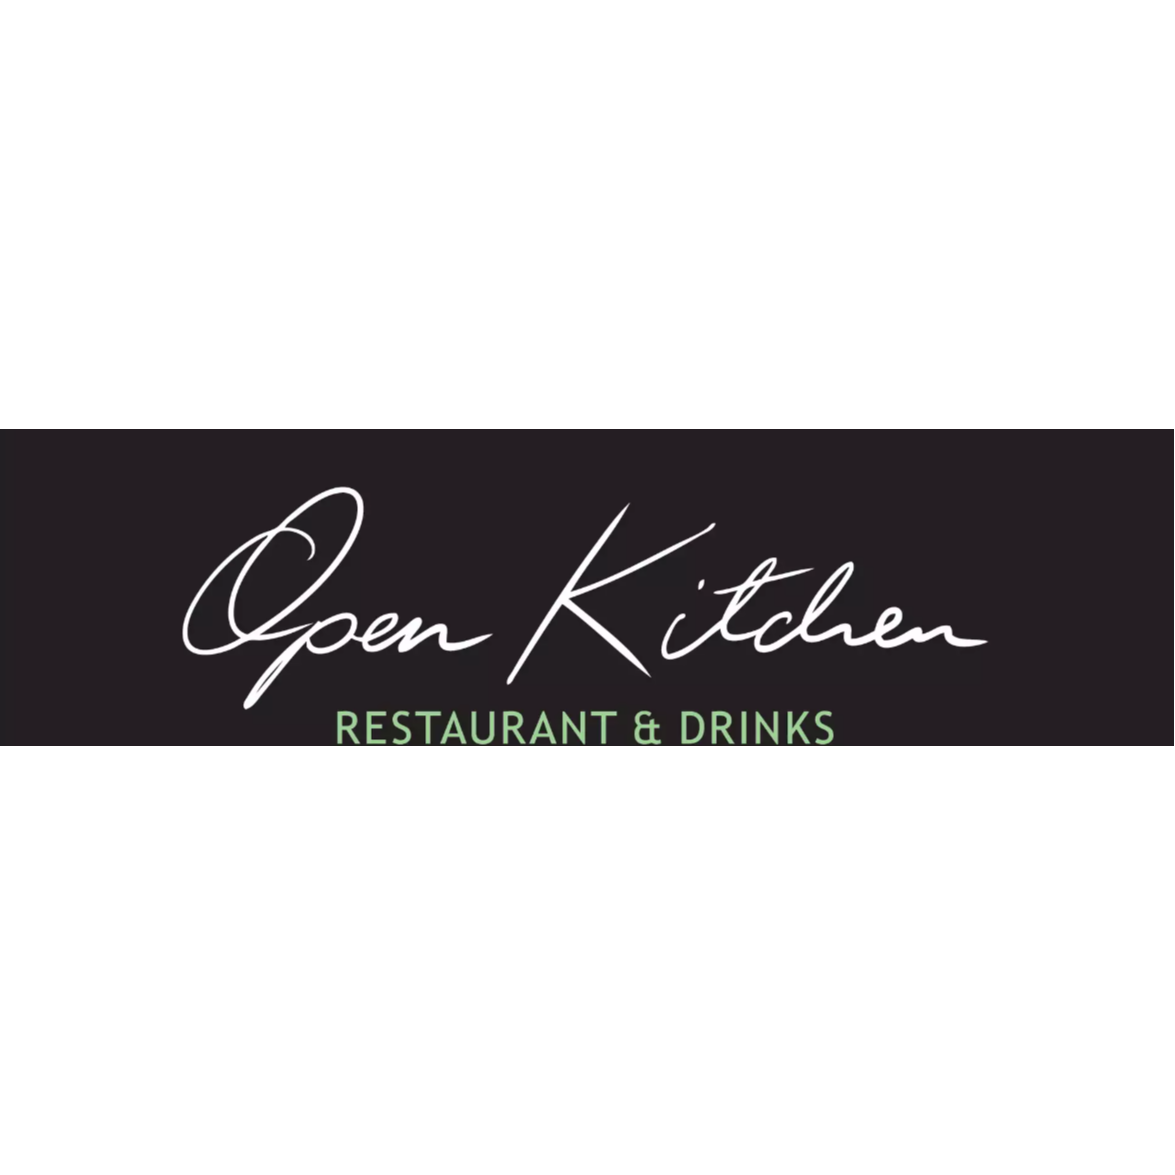 Open Kitchen Restaurant & Drinks Logo